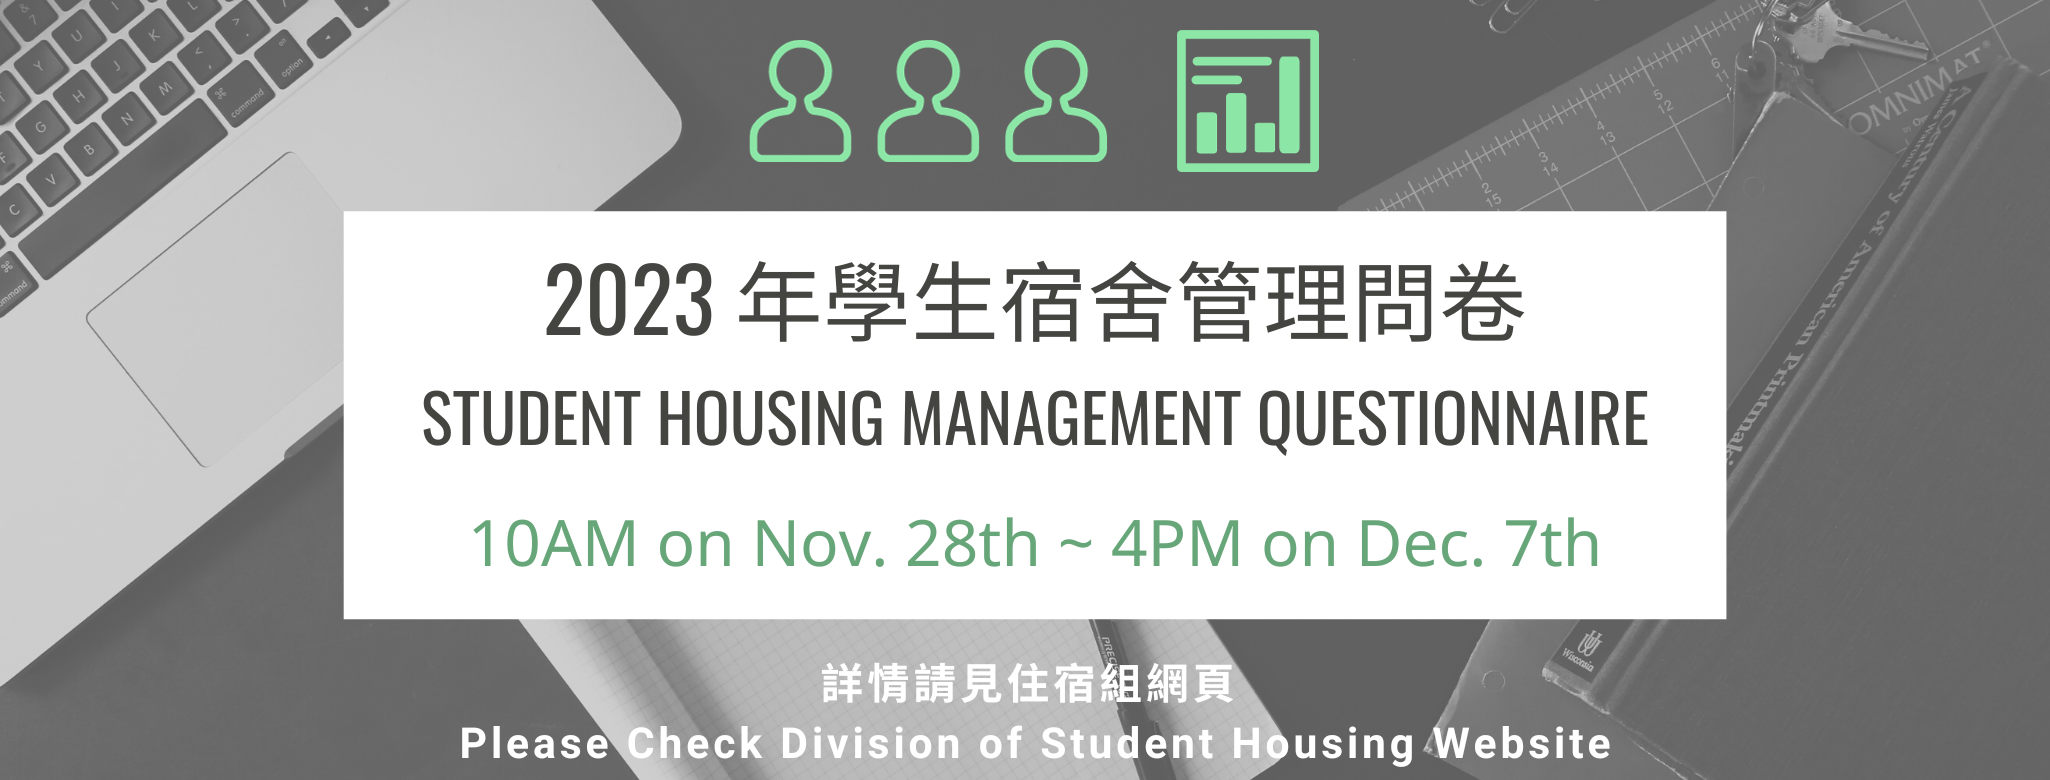 2023 Student Housing Management Questionnaire